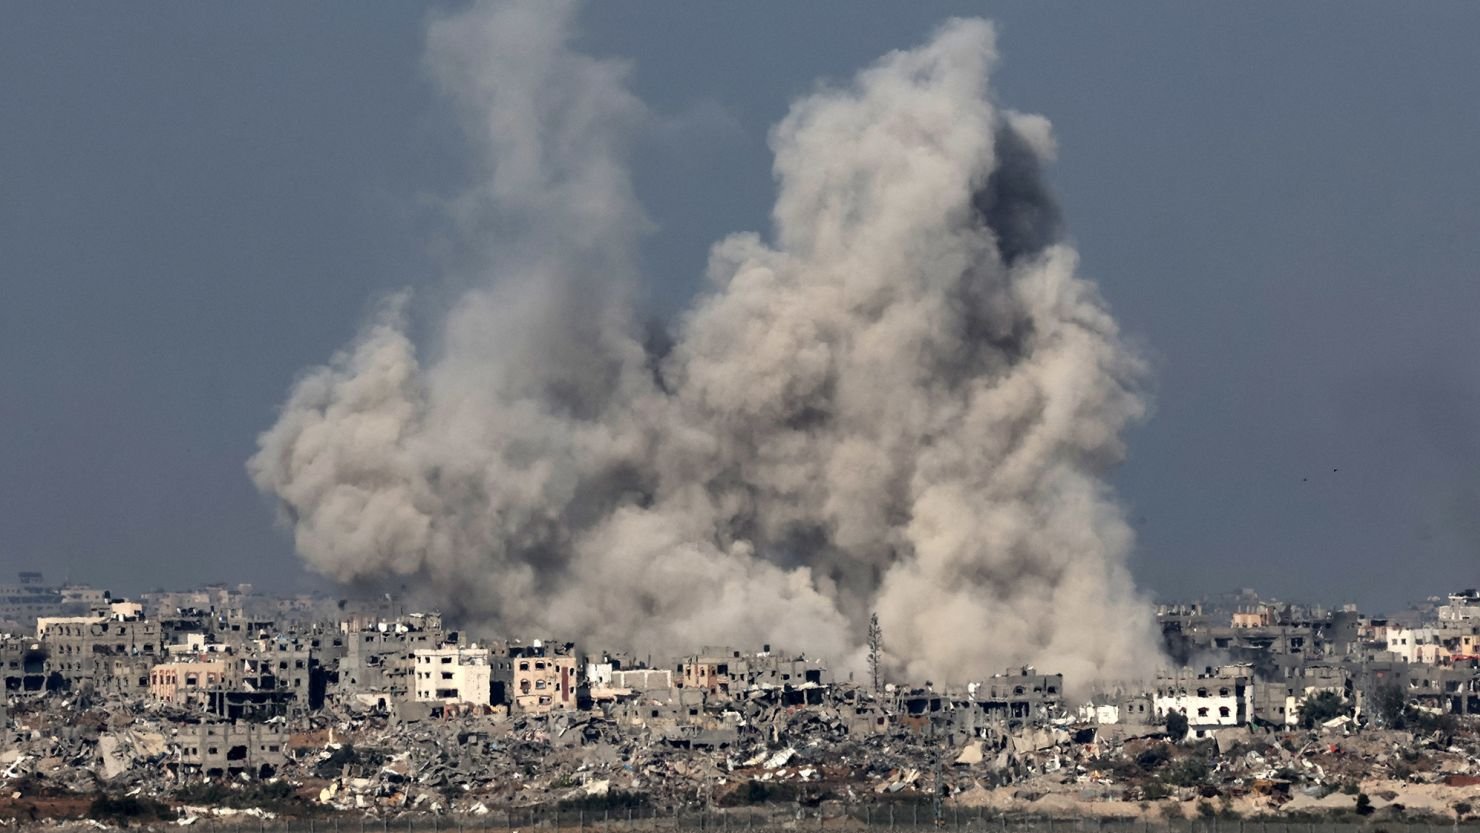 Лондон выступает за прекращение боевых действий в секторе Газа - постпред при ООН